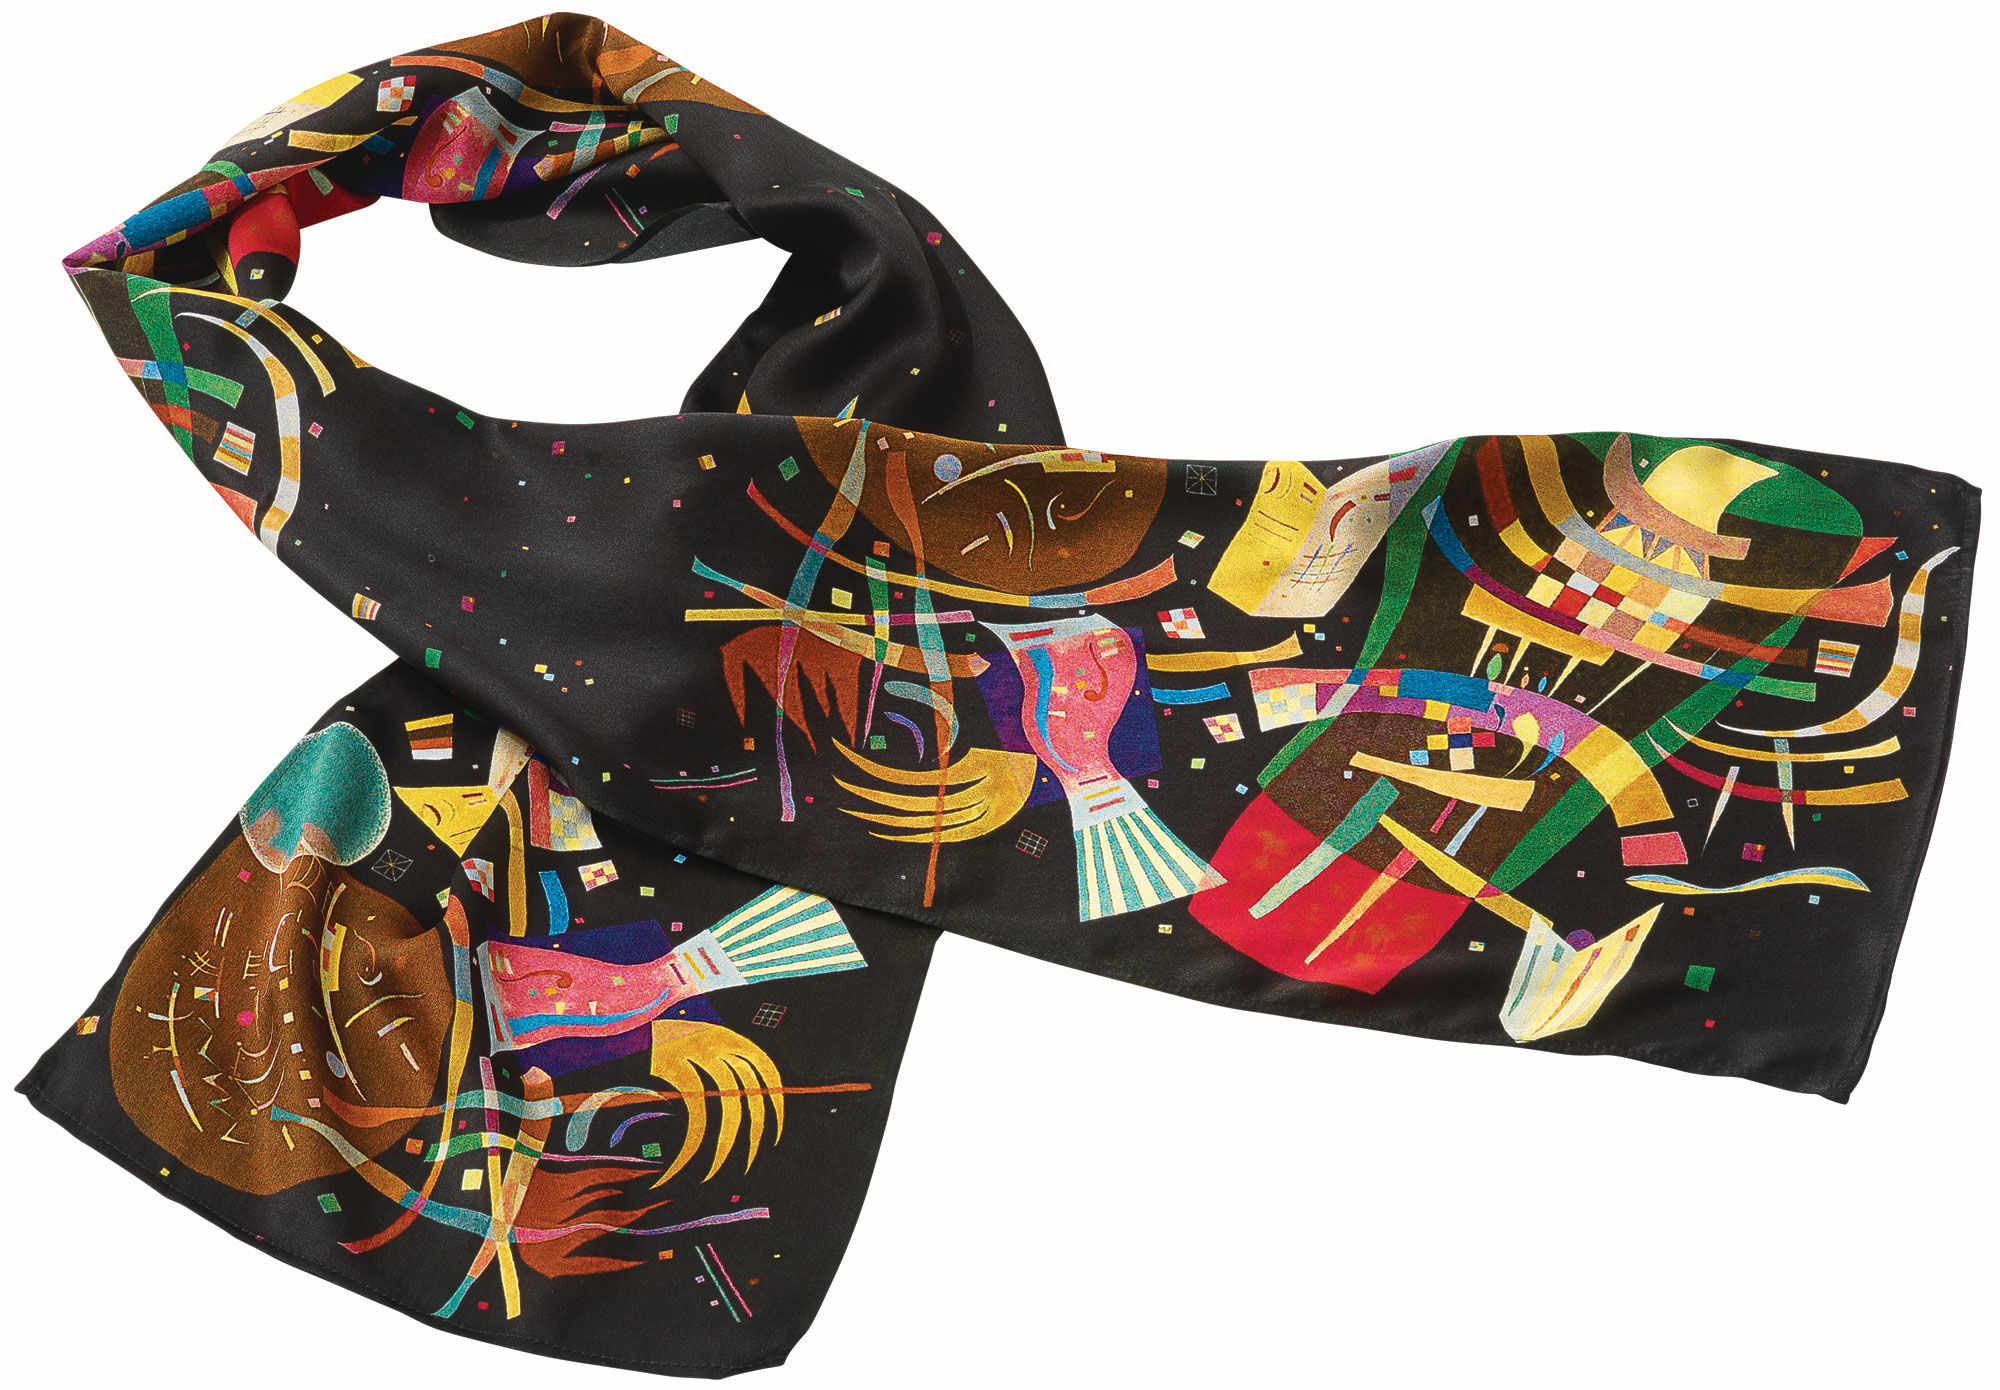 Zijden sjaal "Compositie X" von Wassily Kandinsky